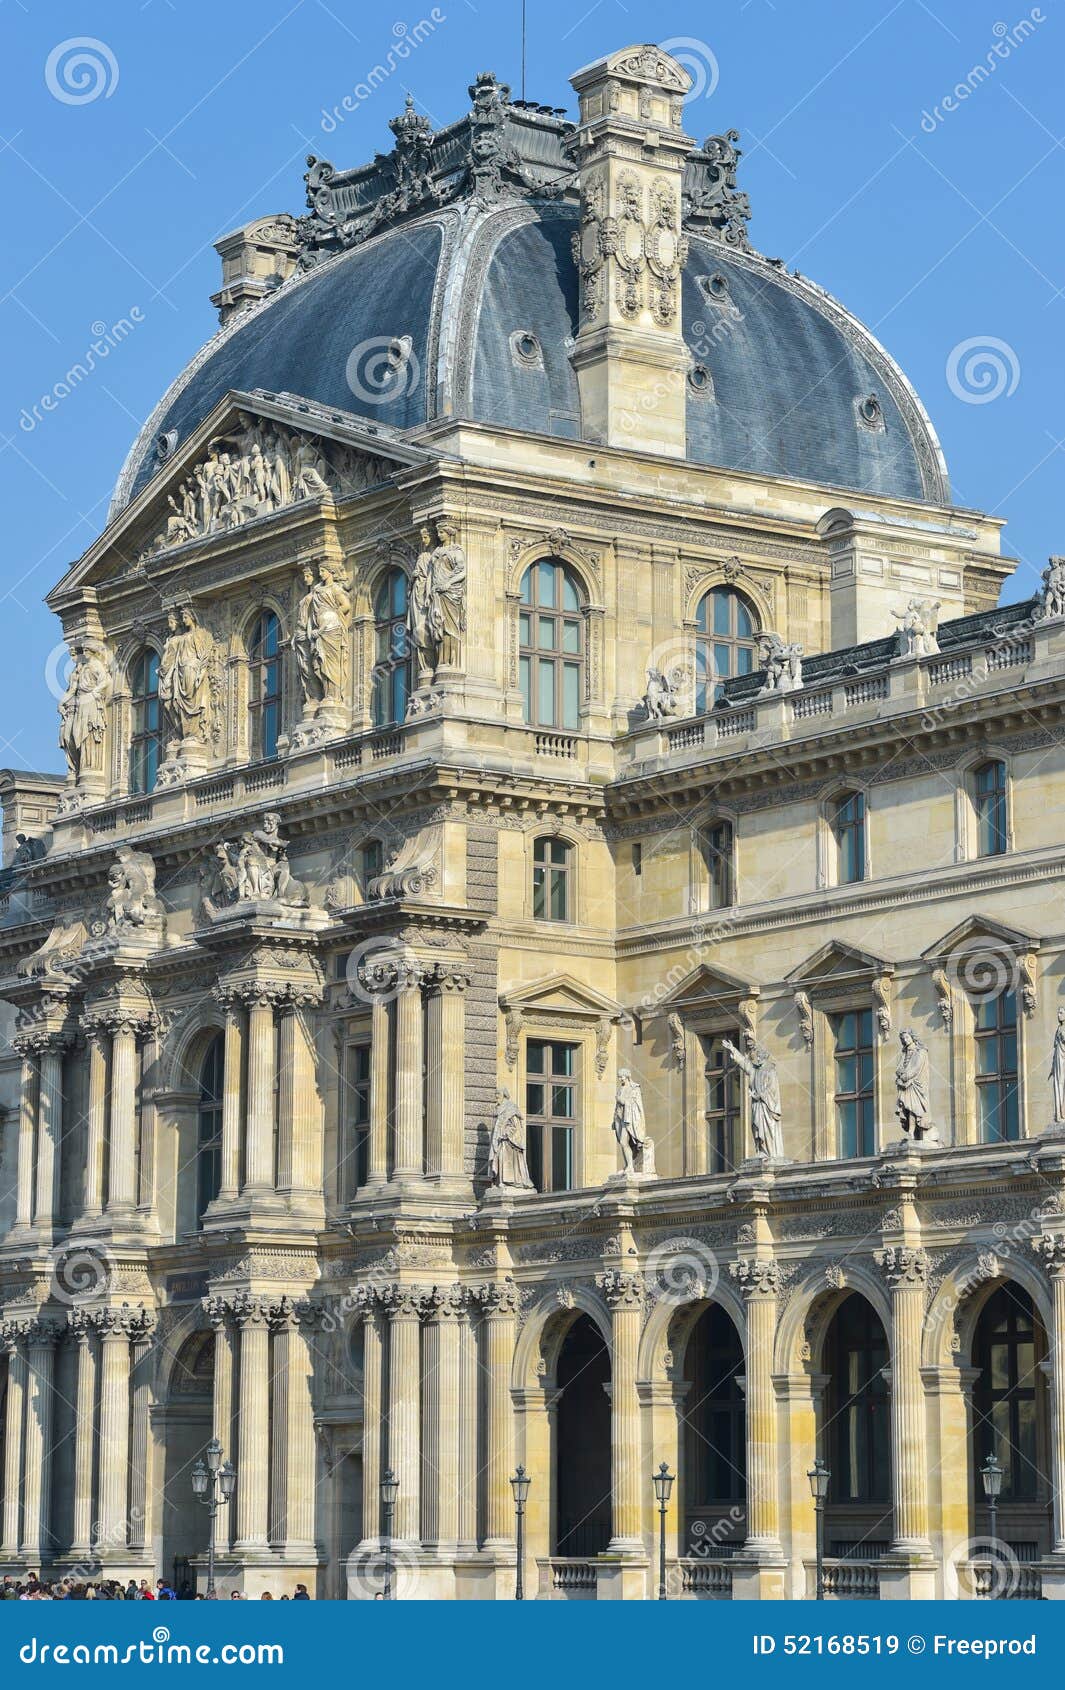 france, paris, tuileries garden, louvre art museum